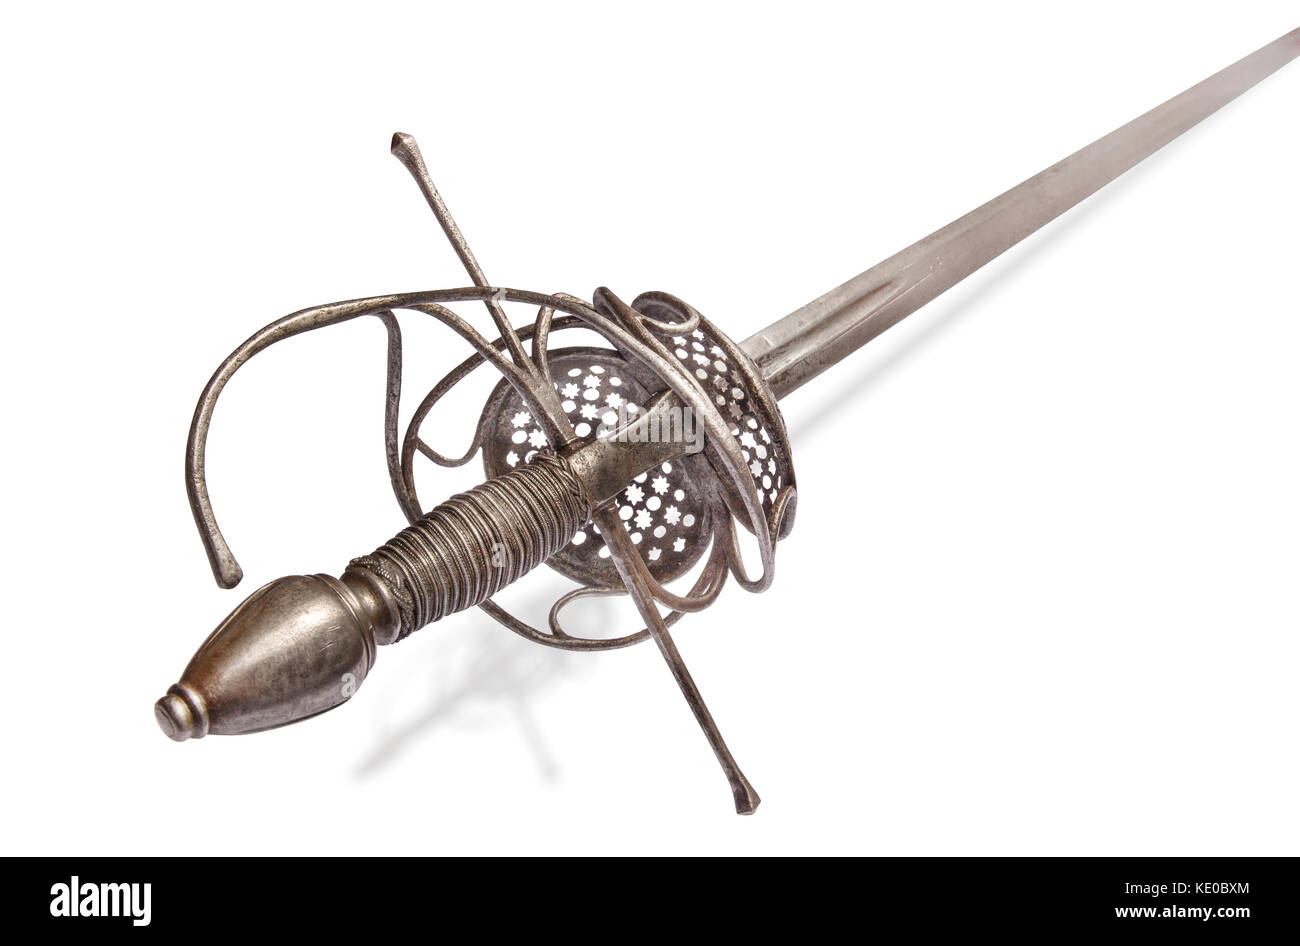 Espada Ropera Francesa de batalla () desde los tiempos de la reina Margot y las guerras francesas de la religión (1562-98). epee con plena hilt. Francia del siglo XVI. Foto de stock